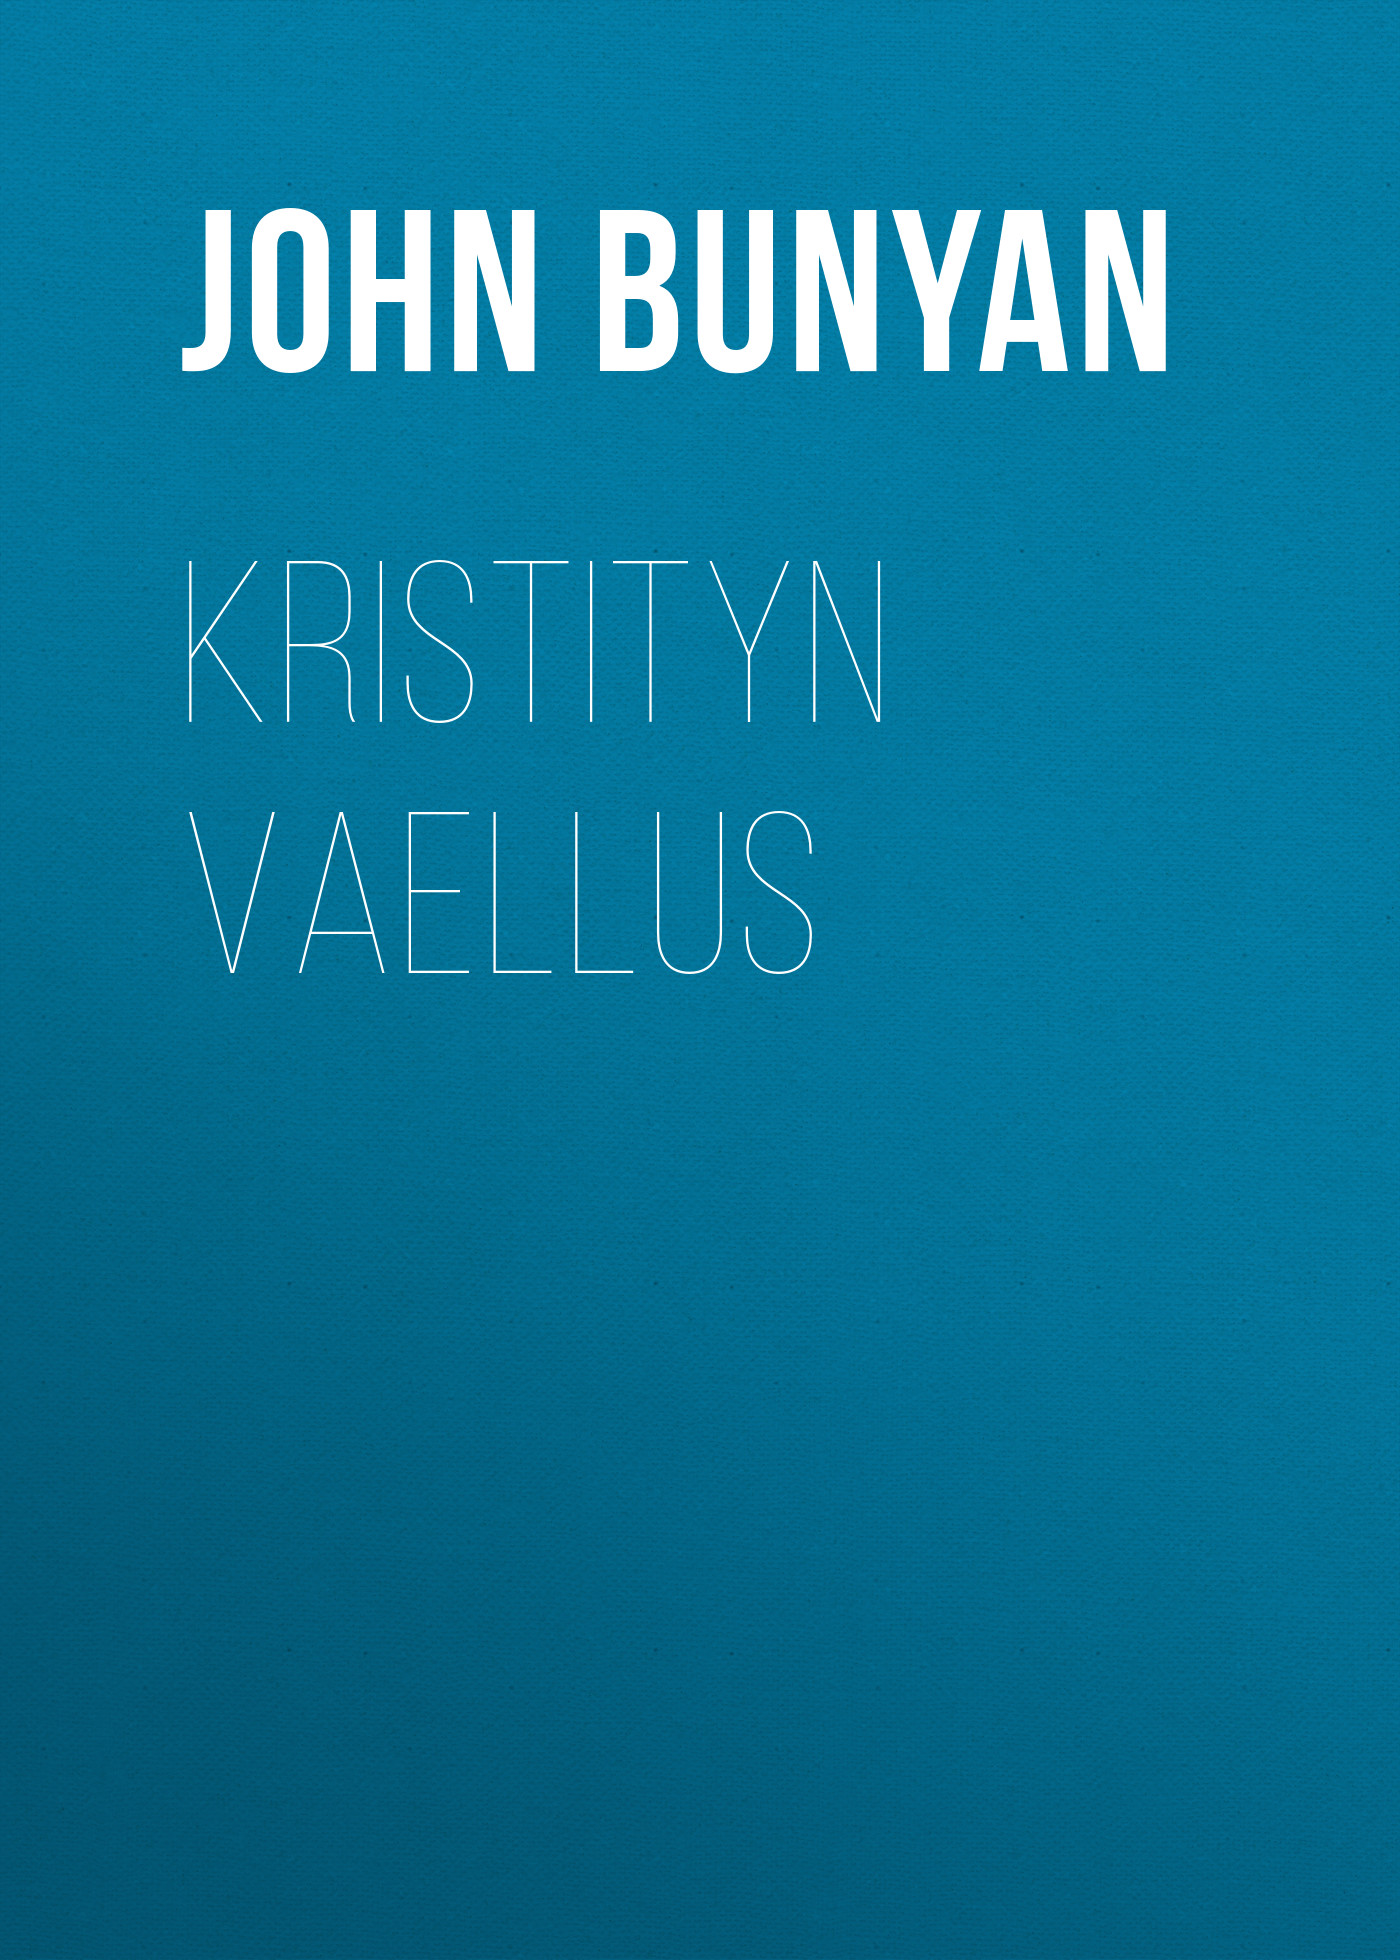 Книга Kristityn vaellus из серии , созданная John Bunyan, может относится к жанру Зарубежная старинная литература, Зарубежная классика. Стоимость электронной книги Kristityn vaellus с идентификатором 24180524 составляет 0 руб.